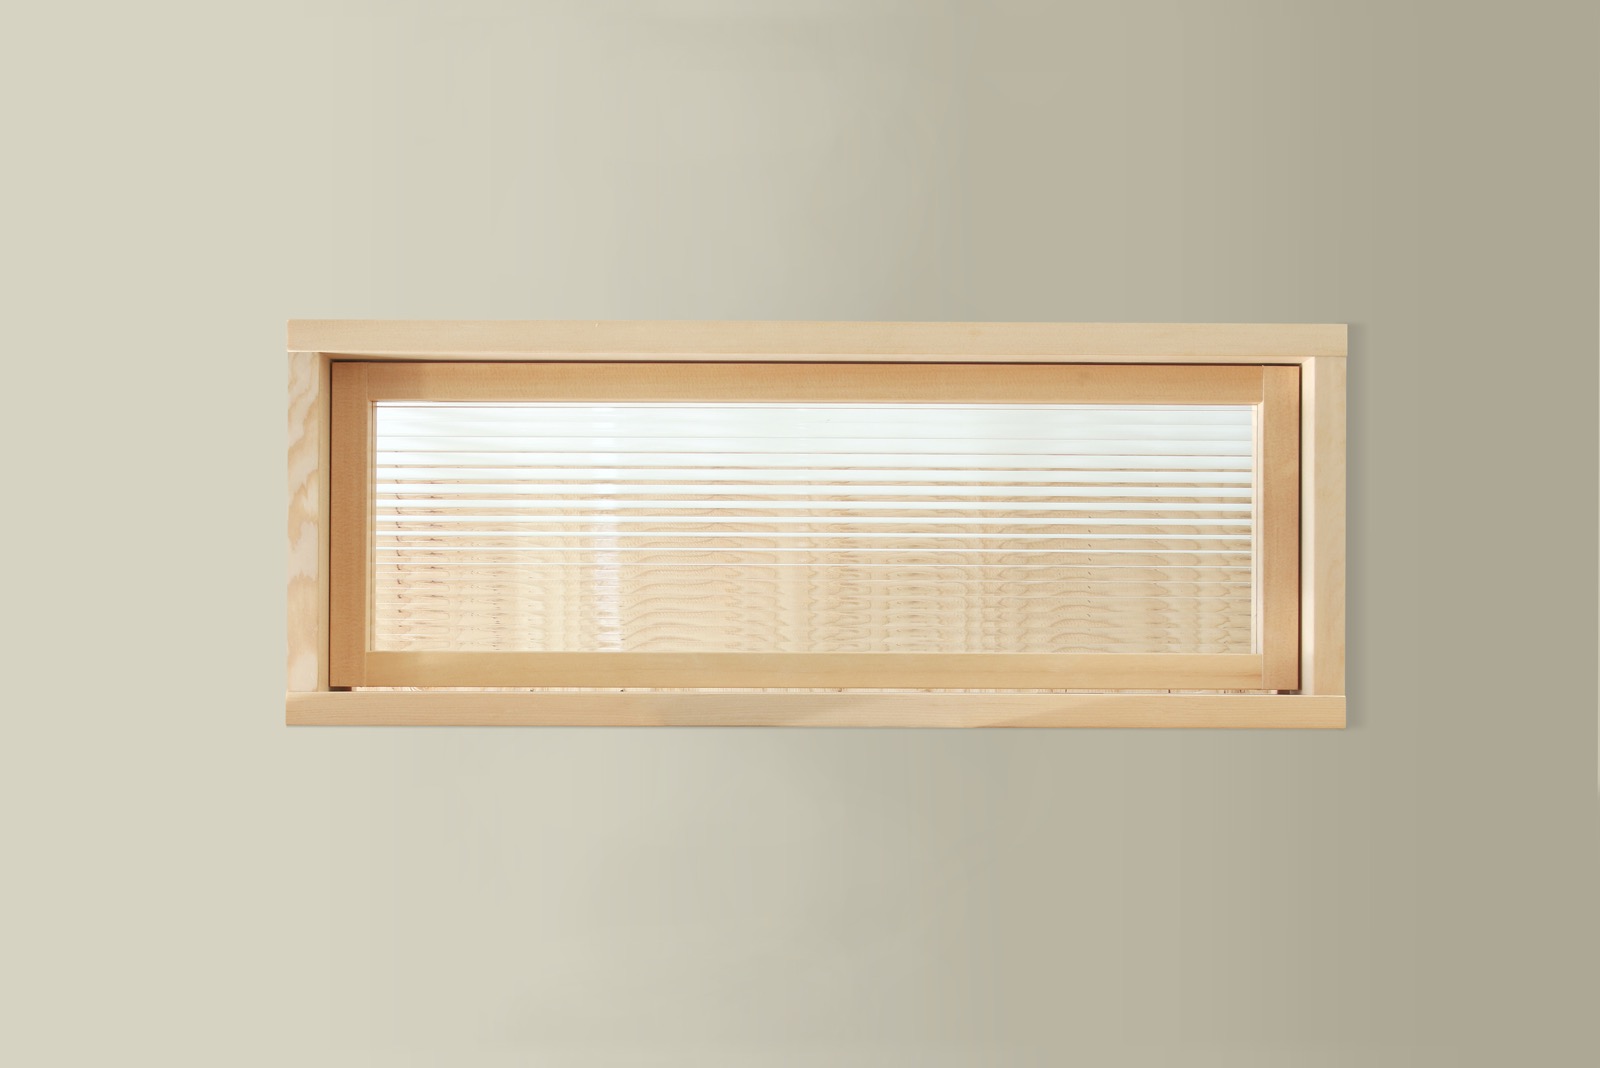 木製室内窓 横長1連 押し出しタイプ DW-DR008-03-G164 追加料金にてモールガラスにもできます